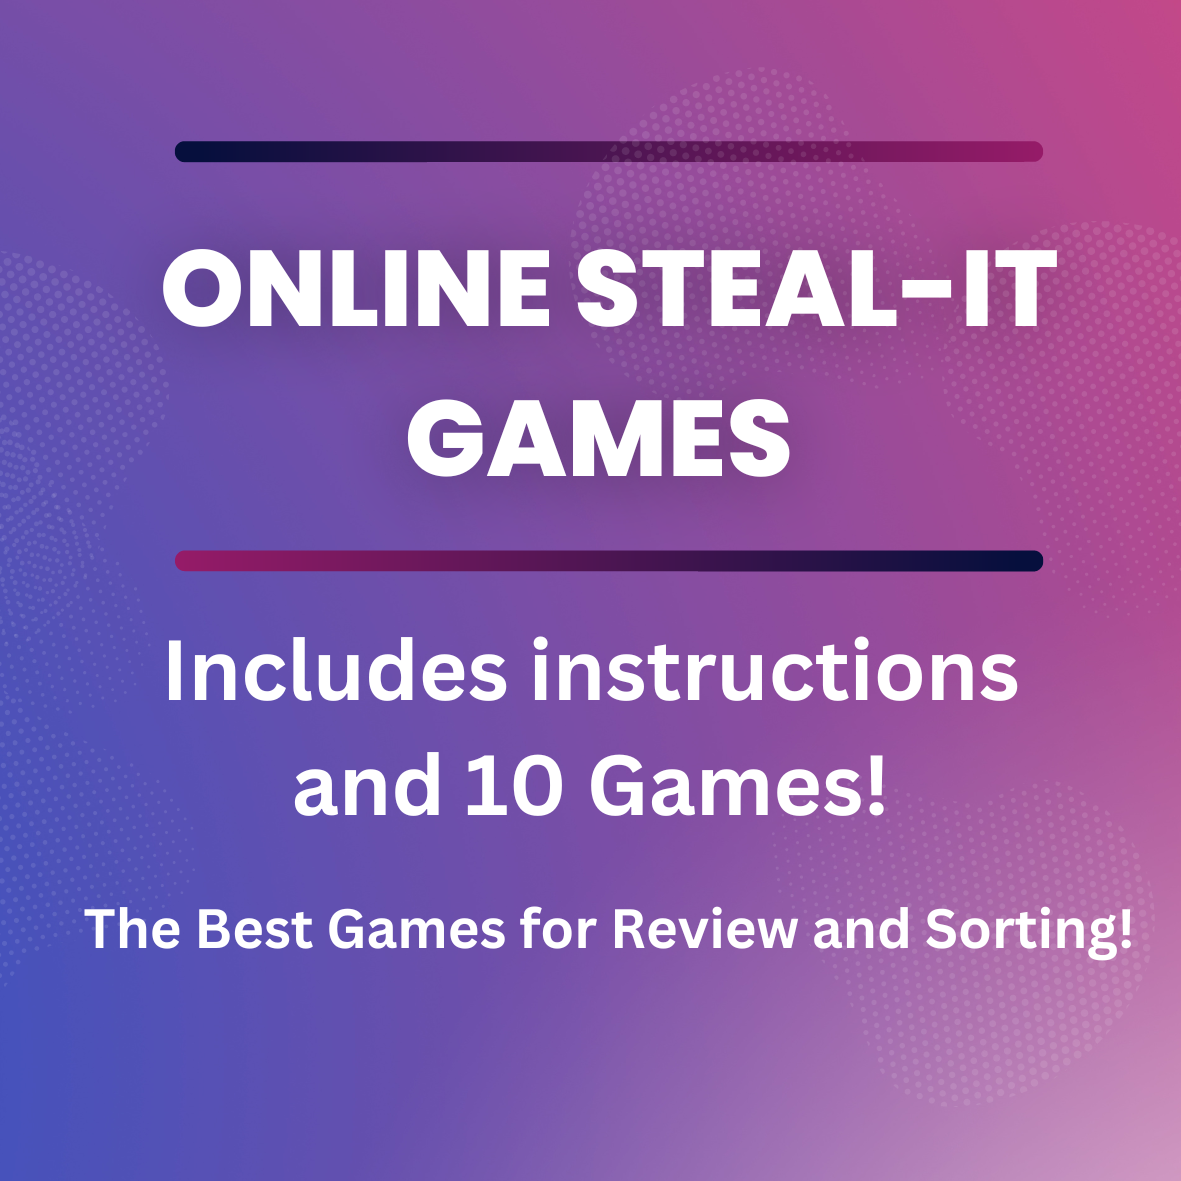 Digital Steal-It Games - 10 Games!